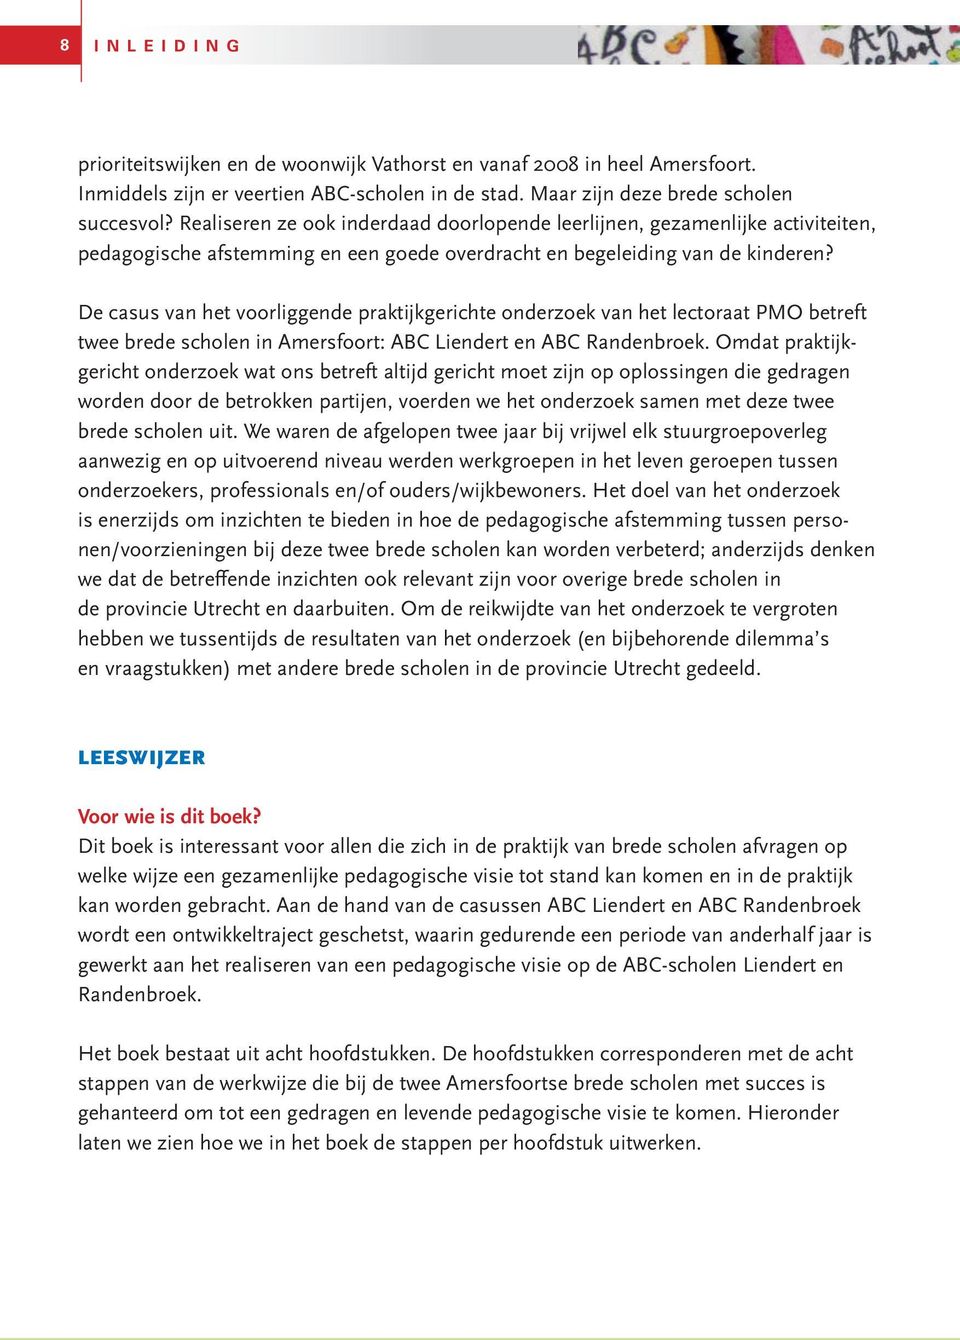 De casus van het voorliggende praktijkgerichte onderzoek van het lectoraat PMO betreft twee brede scholen in Amersfoort: ABC Liendert en ABC Randenbroek.